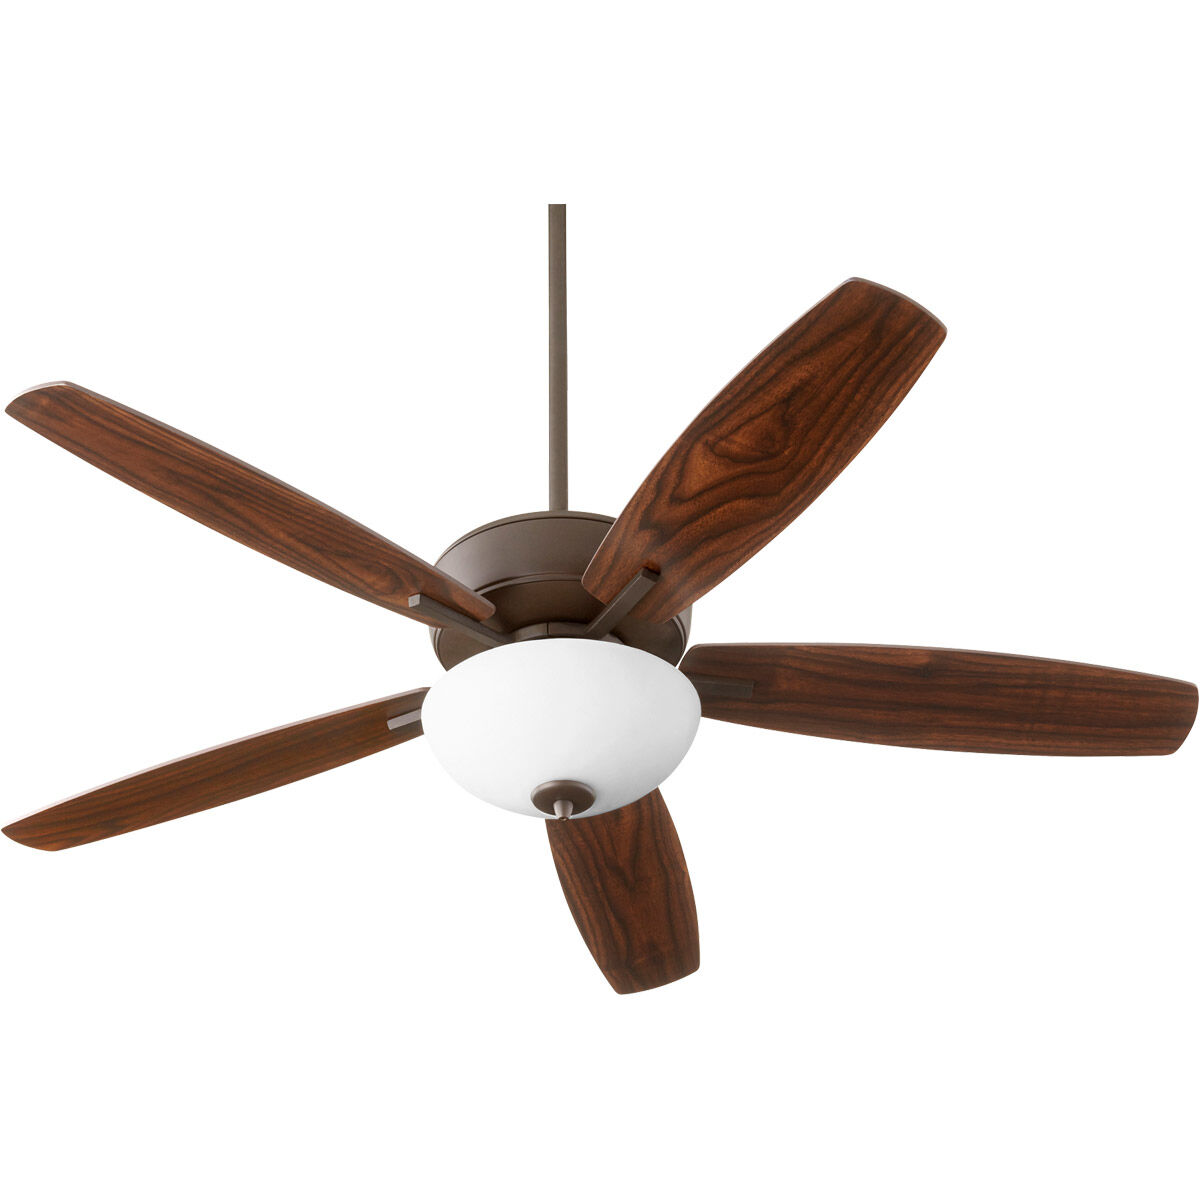 Breeze 52 inch Aged Brass with Dark Oak/Walnut Blades Indoor Ceiling Fan